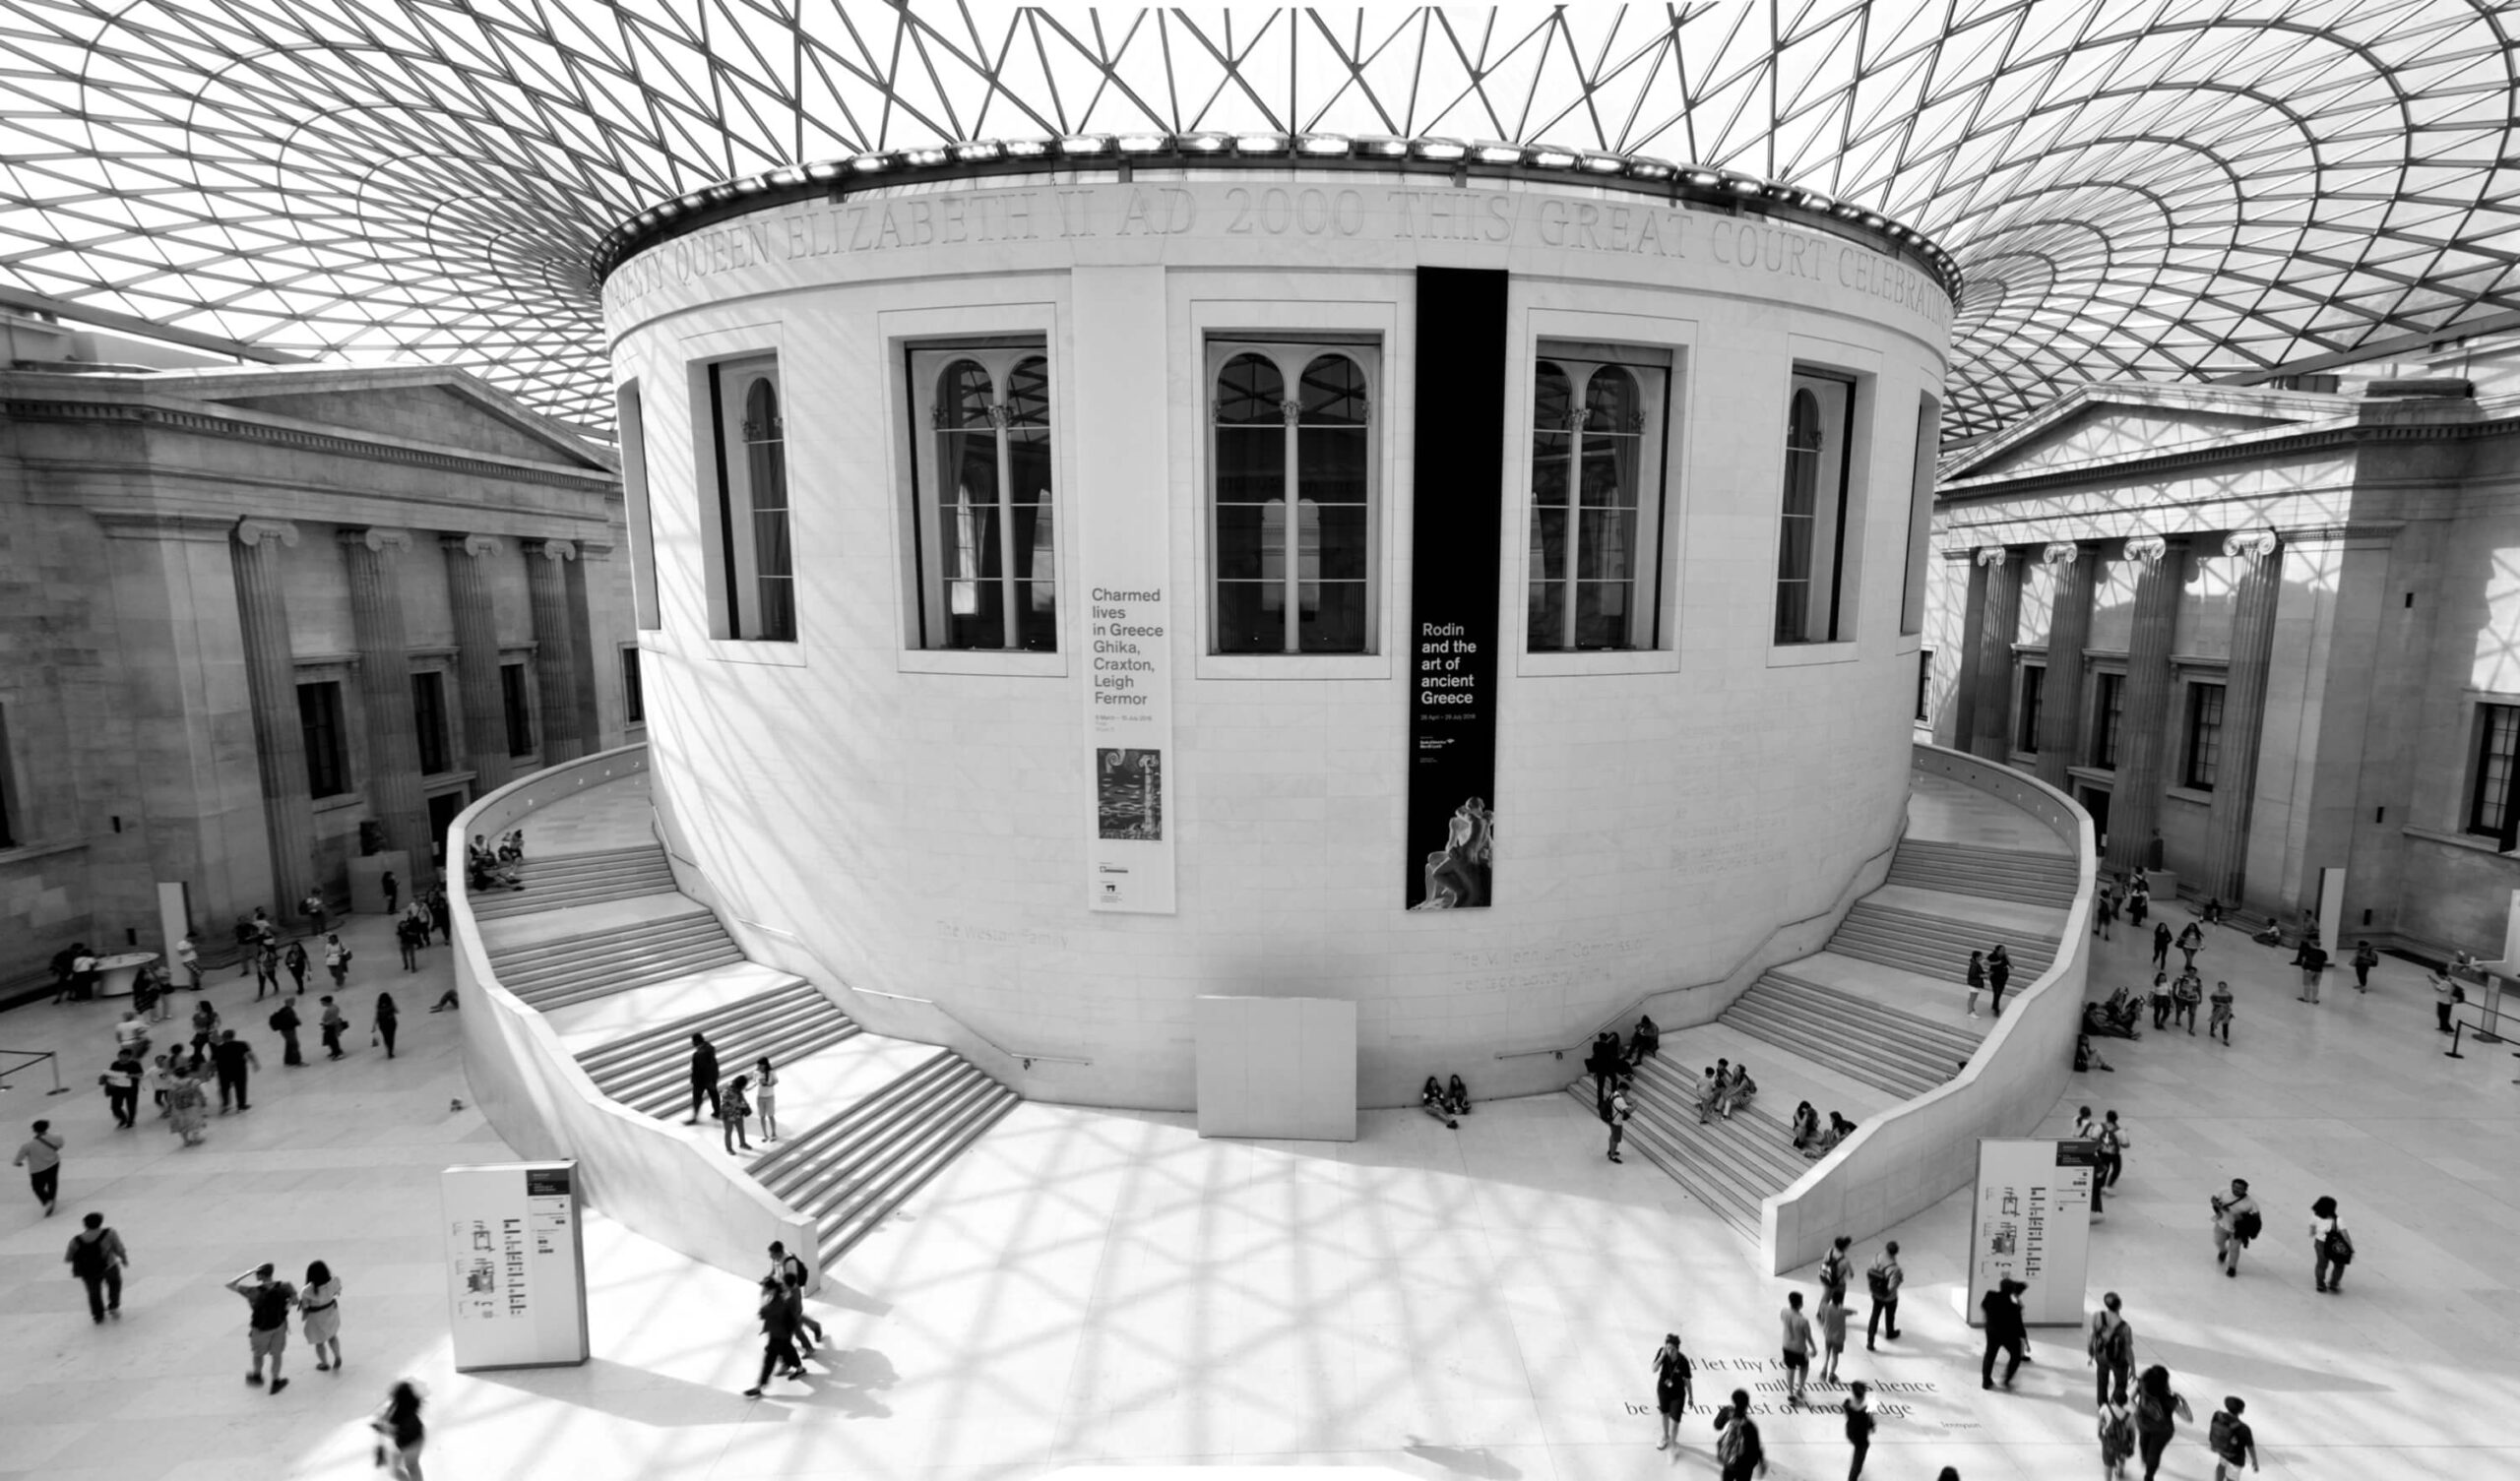 British museum in london